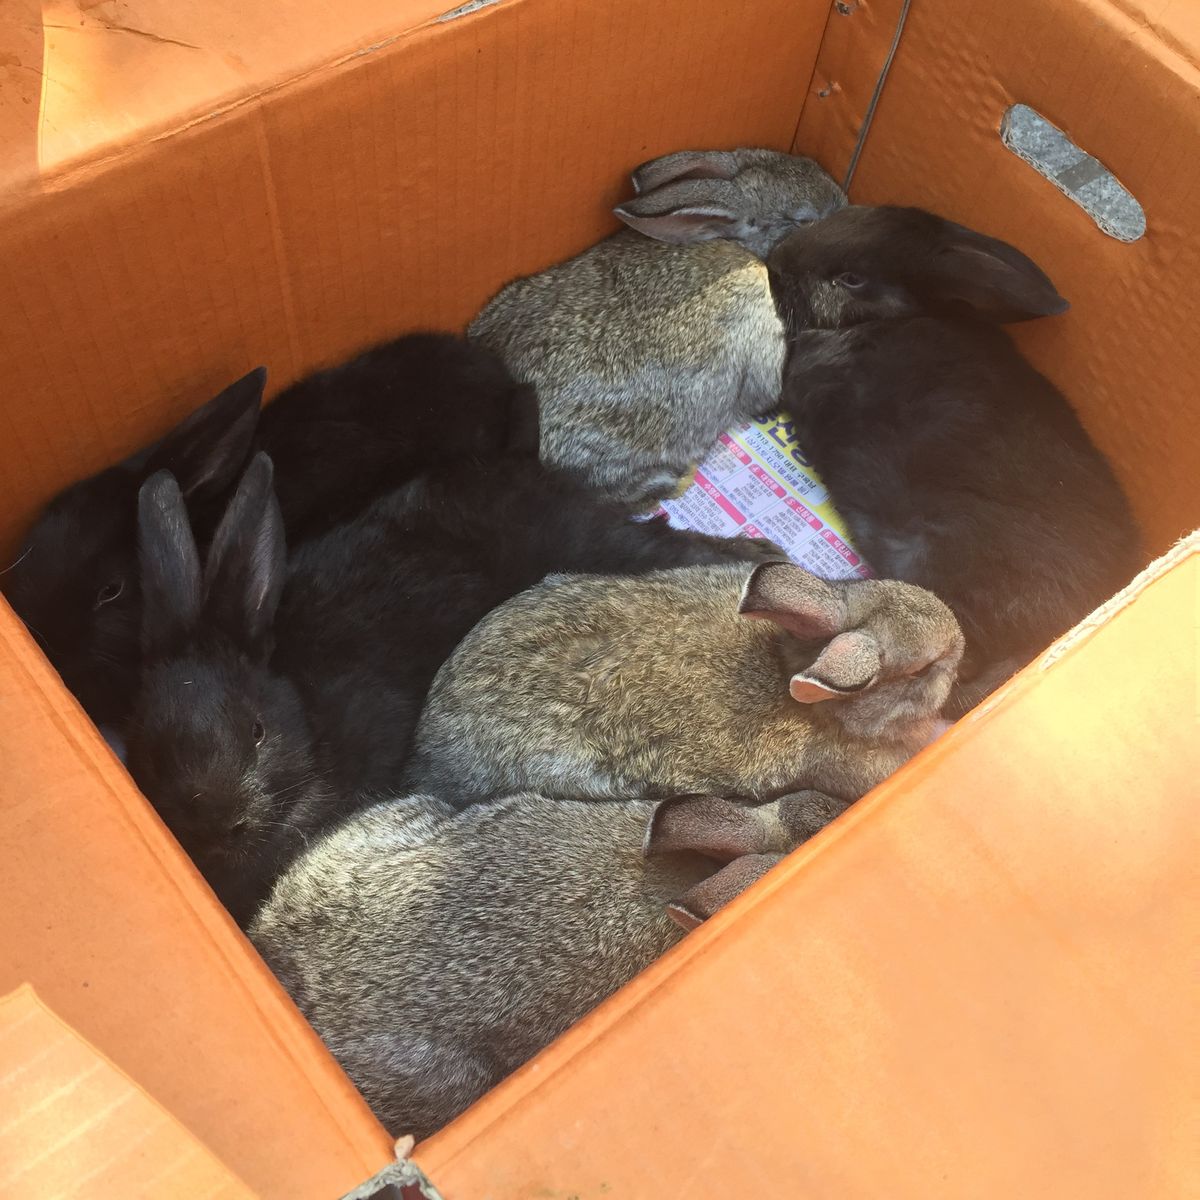 image.jpg : 한달된 토끼아이들 데려가실분!ㅜㅠ